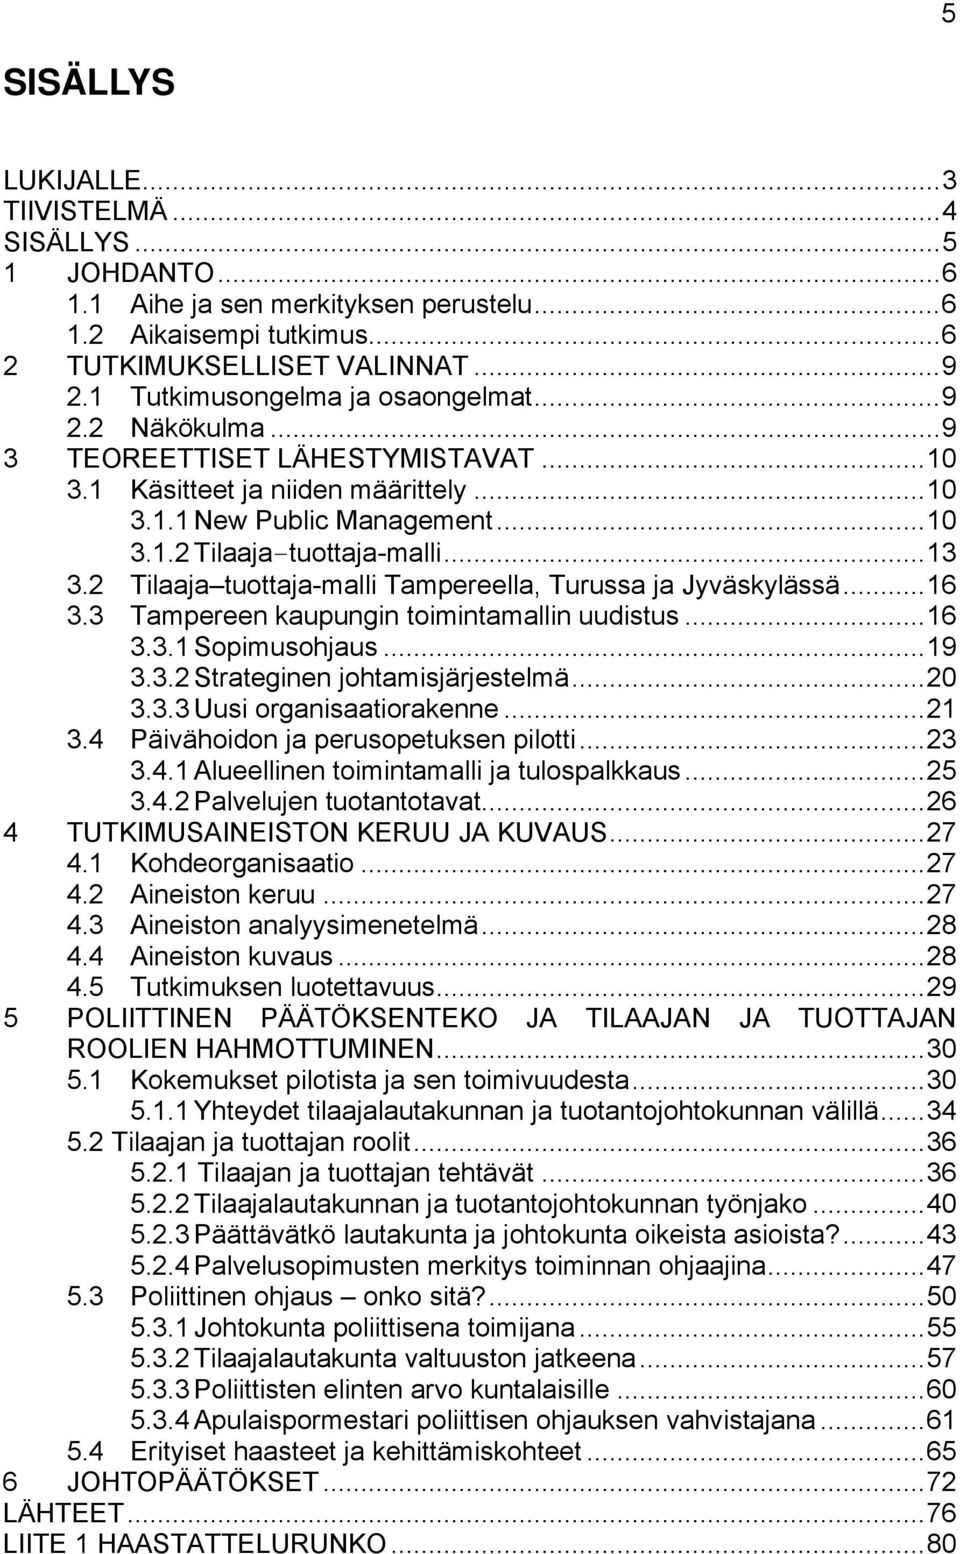 2 Tilaaja tuottaja-malli Tampereella, Turussa ja Jyväskylässä...16 3.3 Tampereen kaupungin toimintamallin uudistus...16 3.3.1 Sopimusohjaus...19 3.3.2 Strateginen johtamisjärjestelmä...20 3.3.3 Uusi organisaatiorakenne.